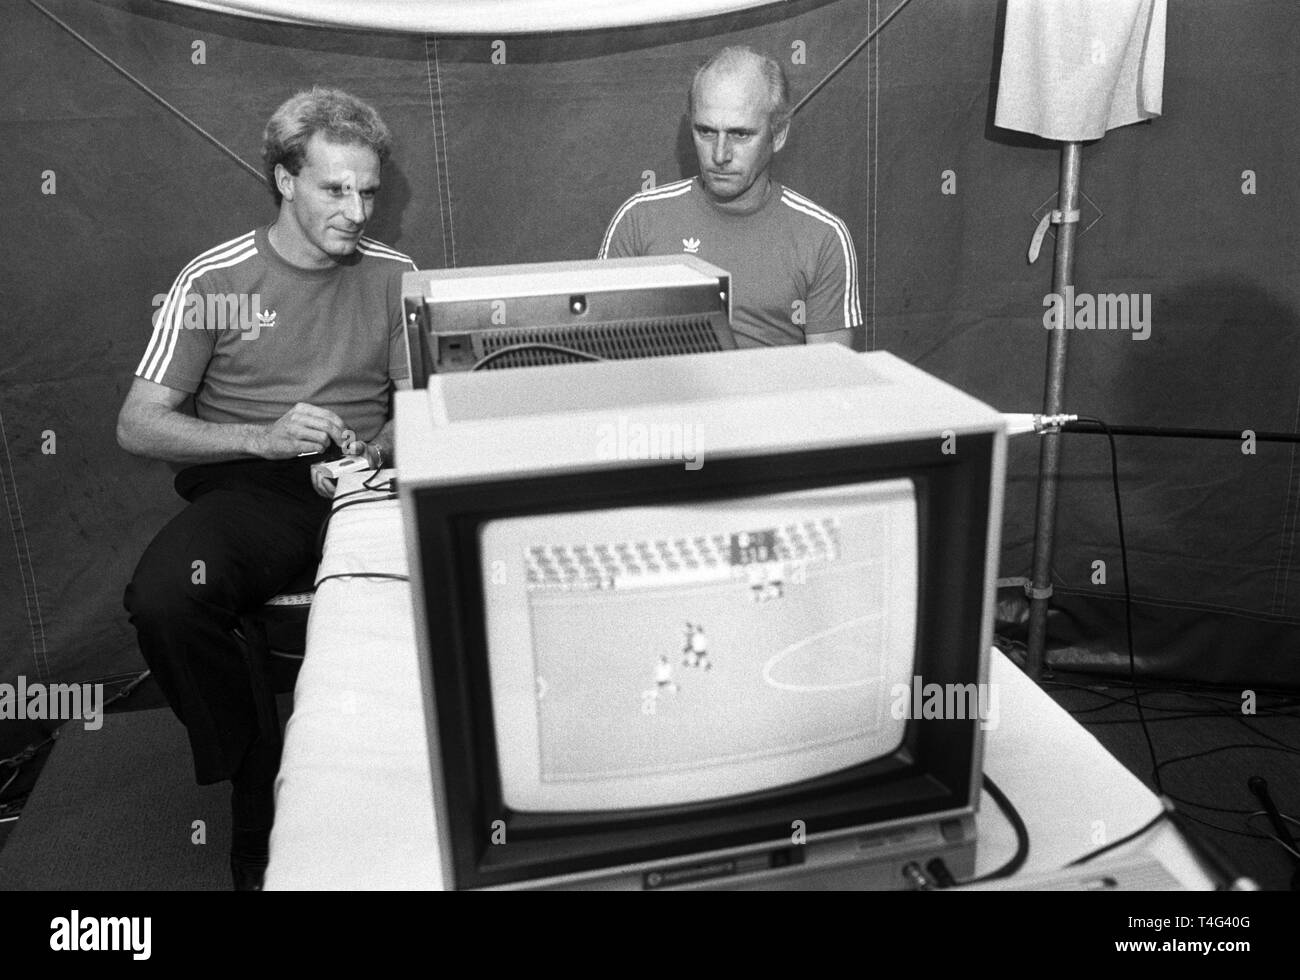 Der Münchner Bayern-Trainer Udo Lattek (r) und sein Stürmer Karl-Heinz Rummenigge sitzen am 20.10.1983 auf der 'System 83'-Ausstellung in München an einem Fußball-Computerspiel. | usage worldwide Stock Photo